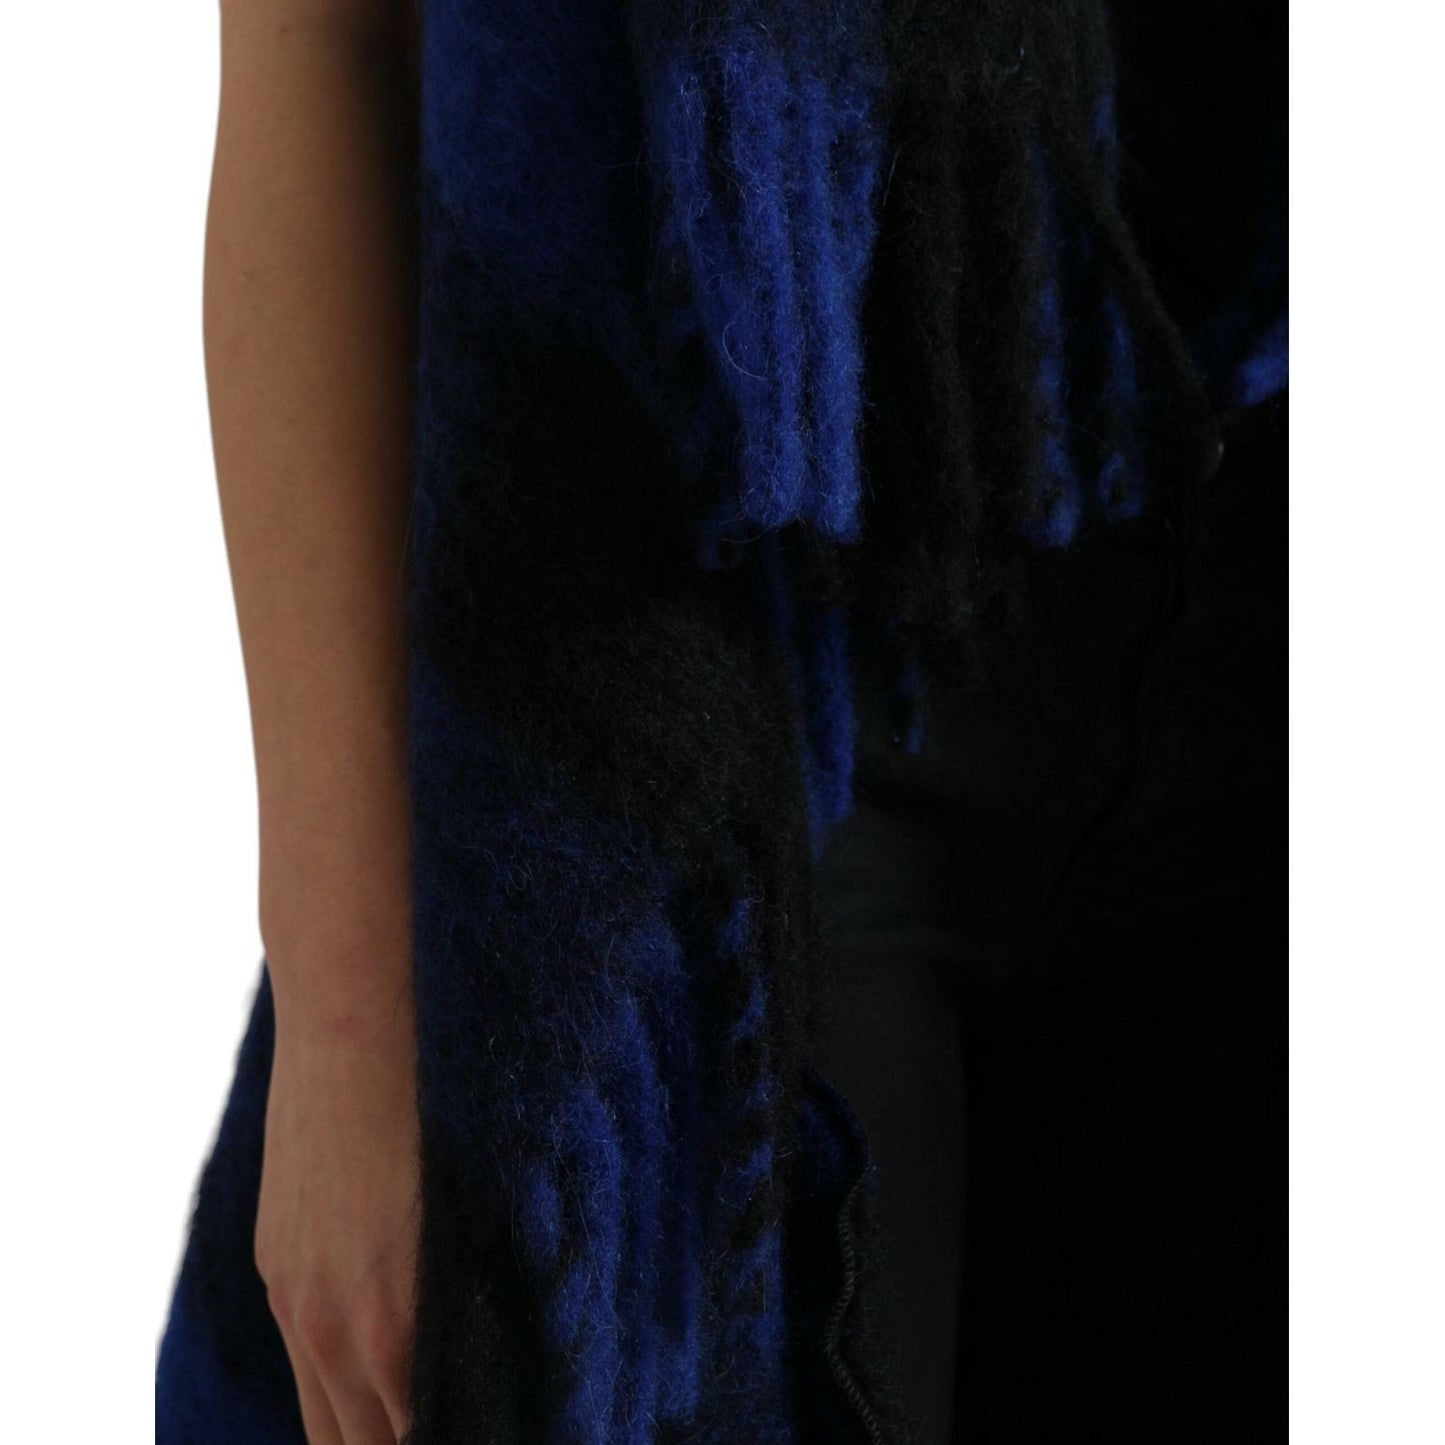 Dolce & Gabbana Elegant Checkered Fringe Poncho Cardigan black-blue-buffalo-check-poncho-coat-sweater